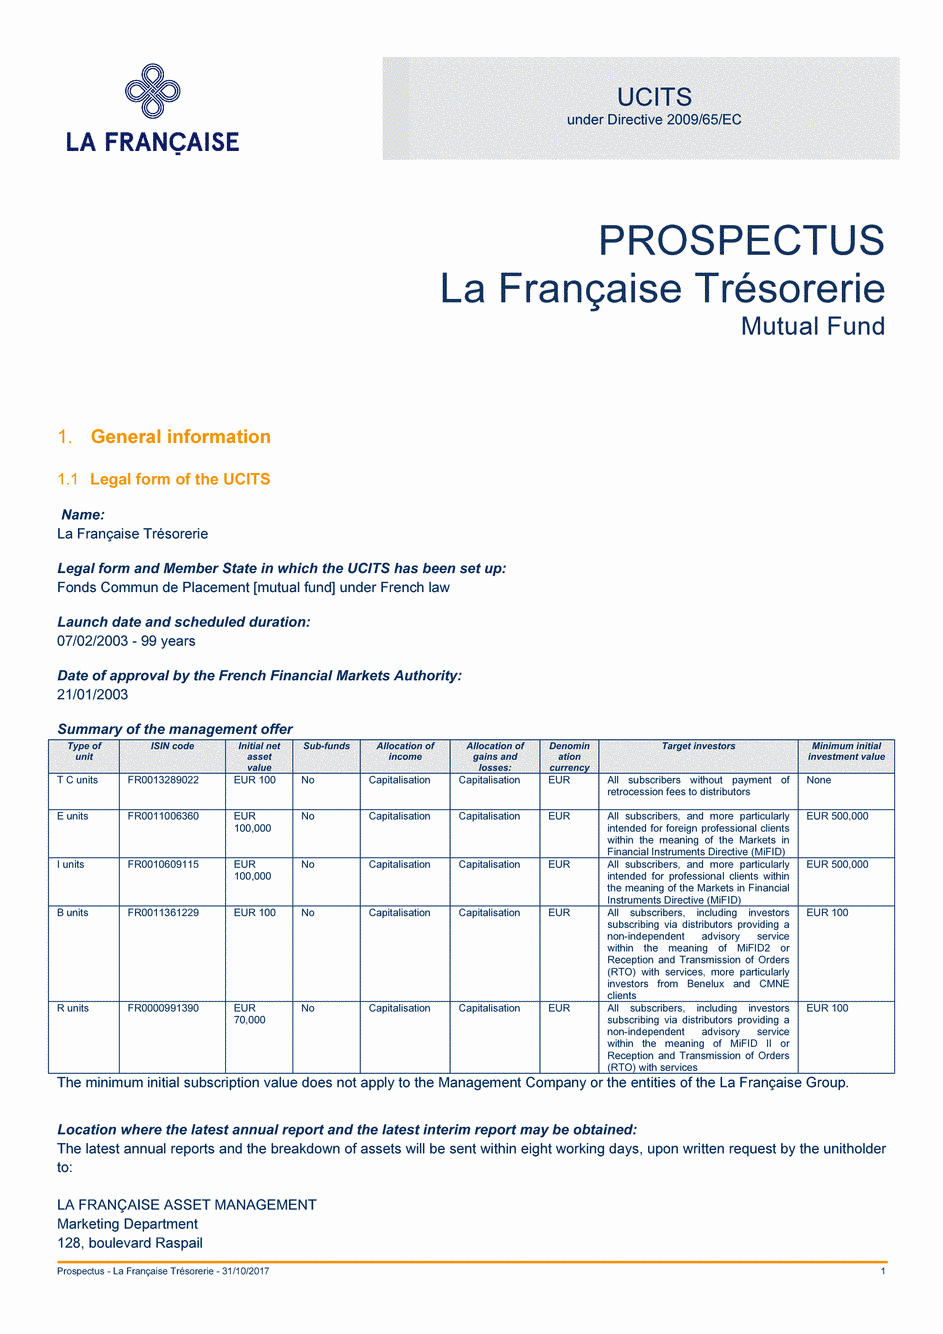 Prospectus La Française Trésorerie - Part I - 31/10/2017 - Anglais